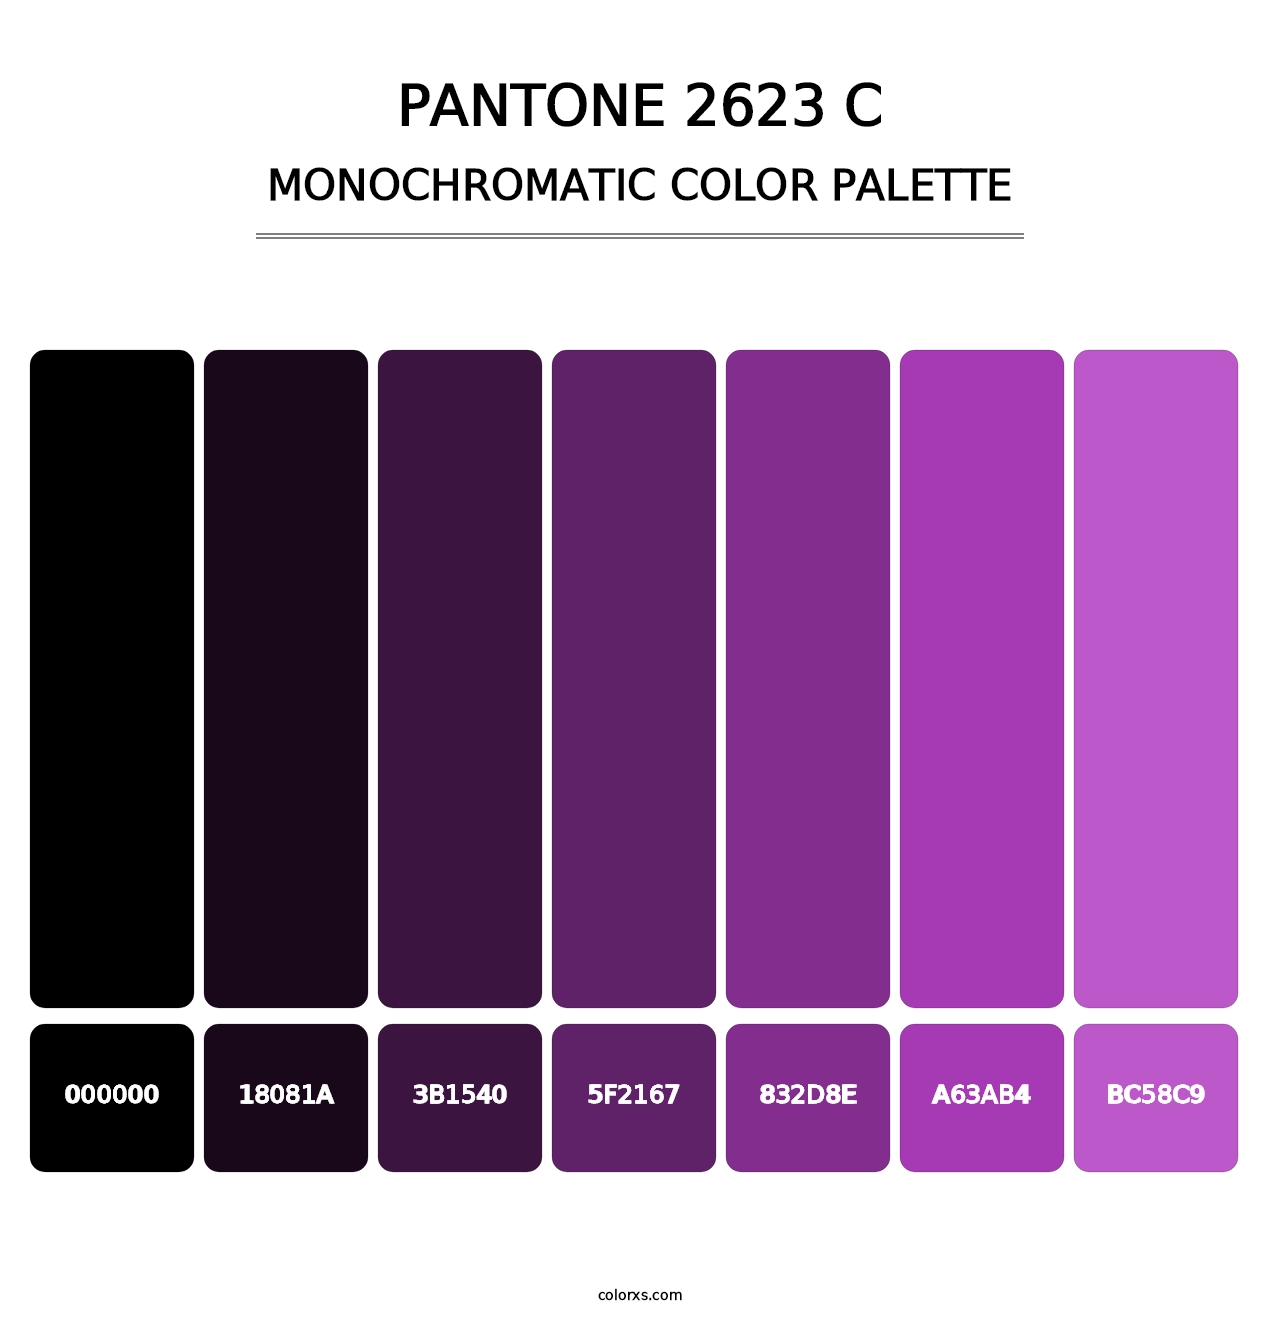 PANTONE 2623 C - Monochromatic Color Palette